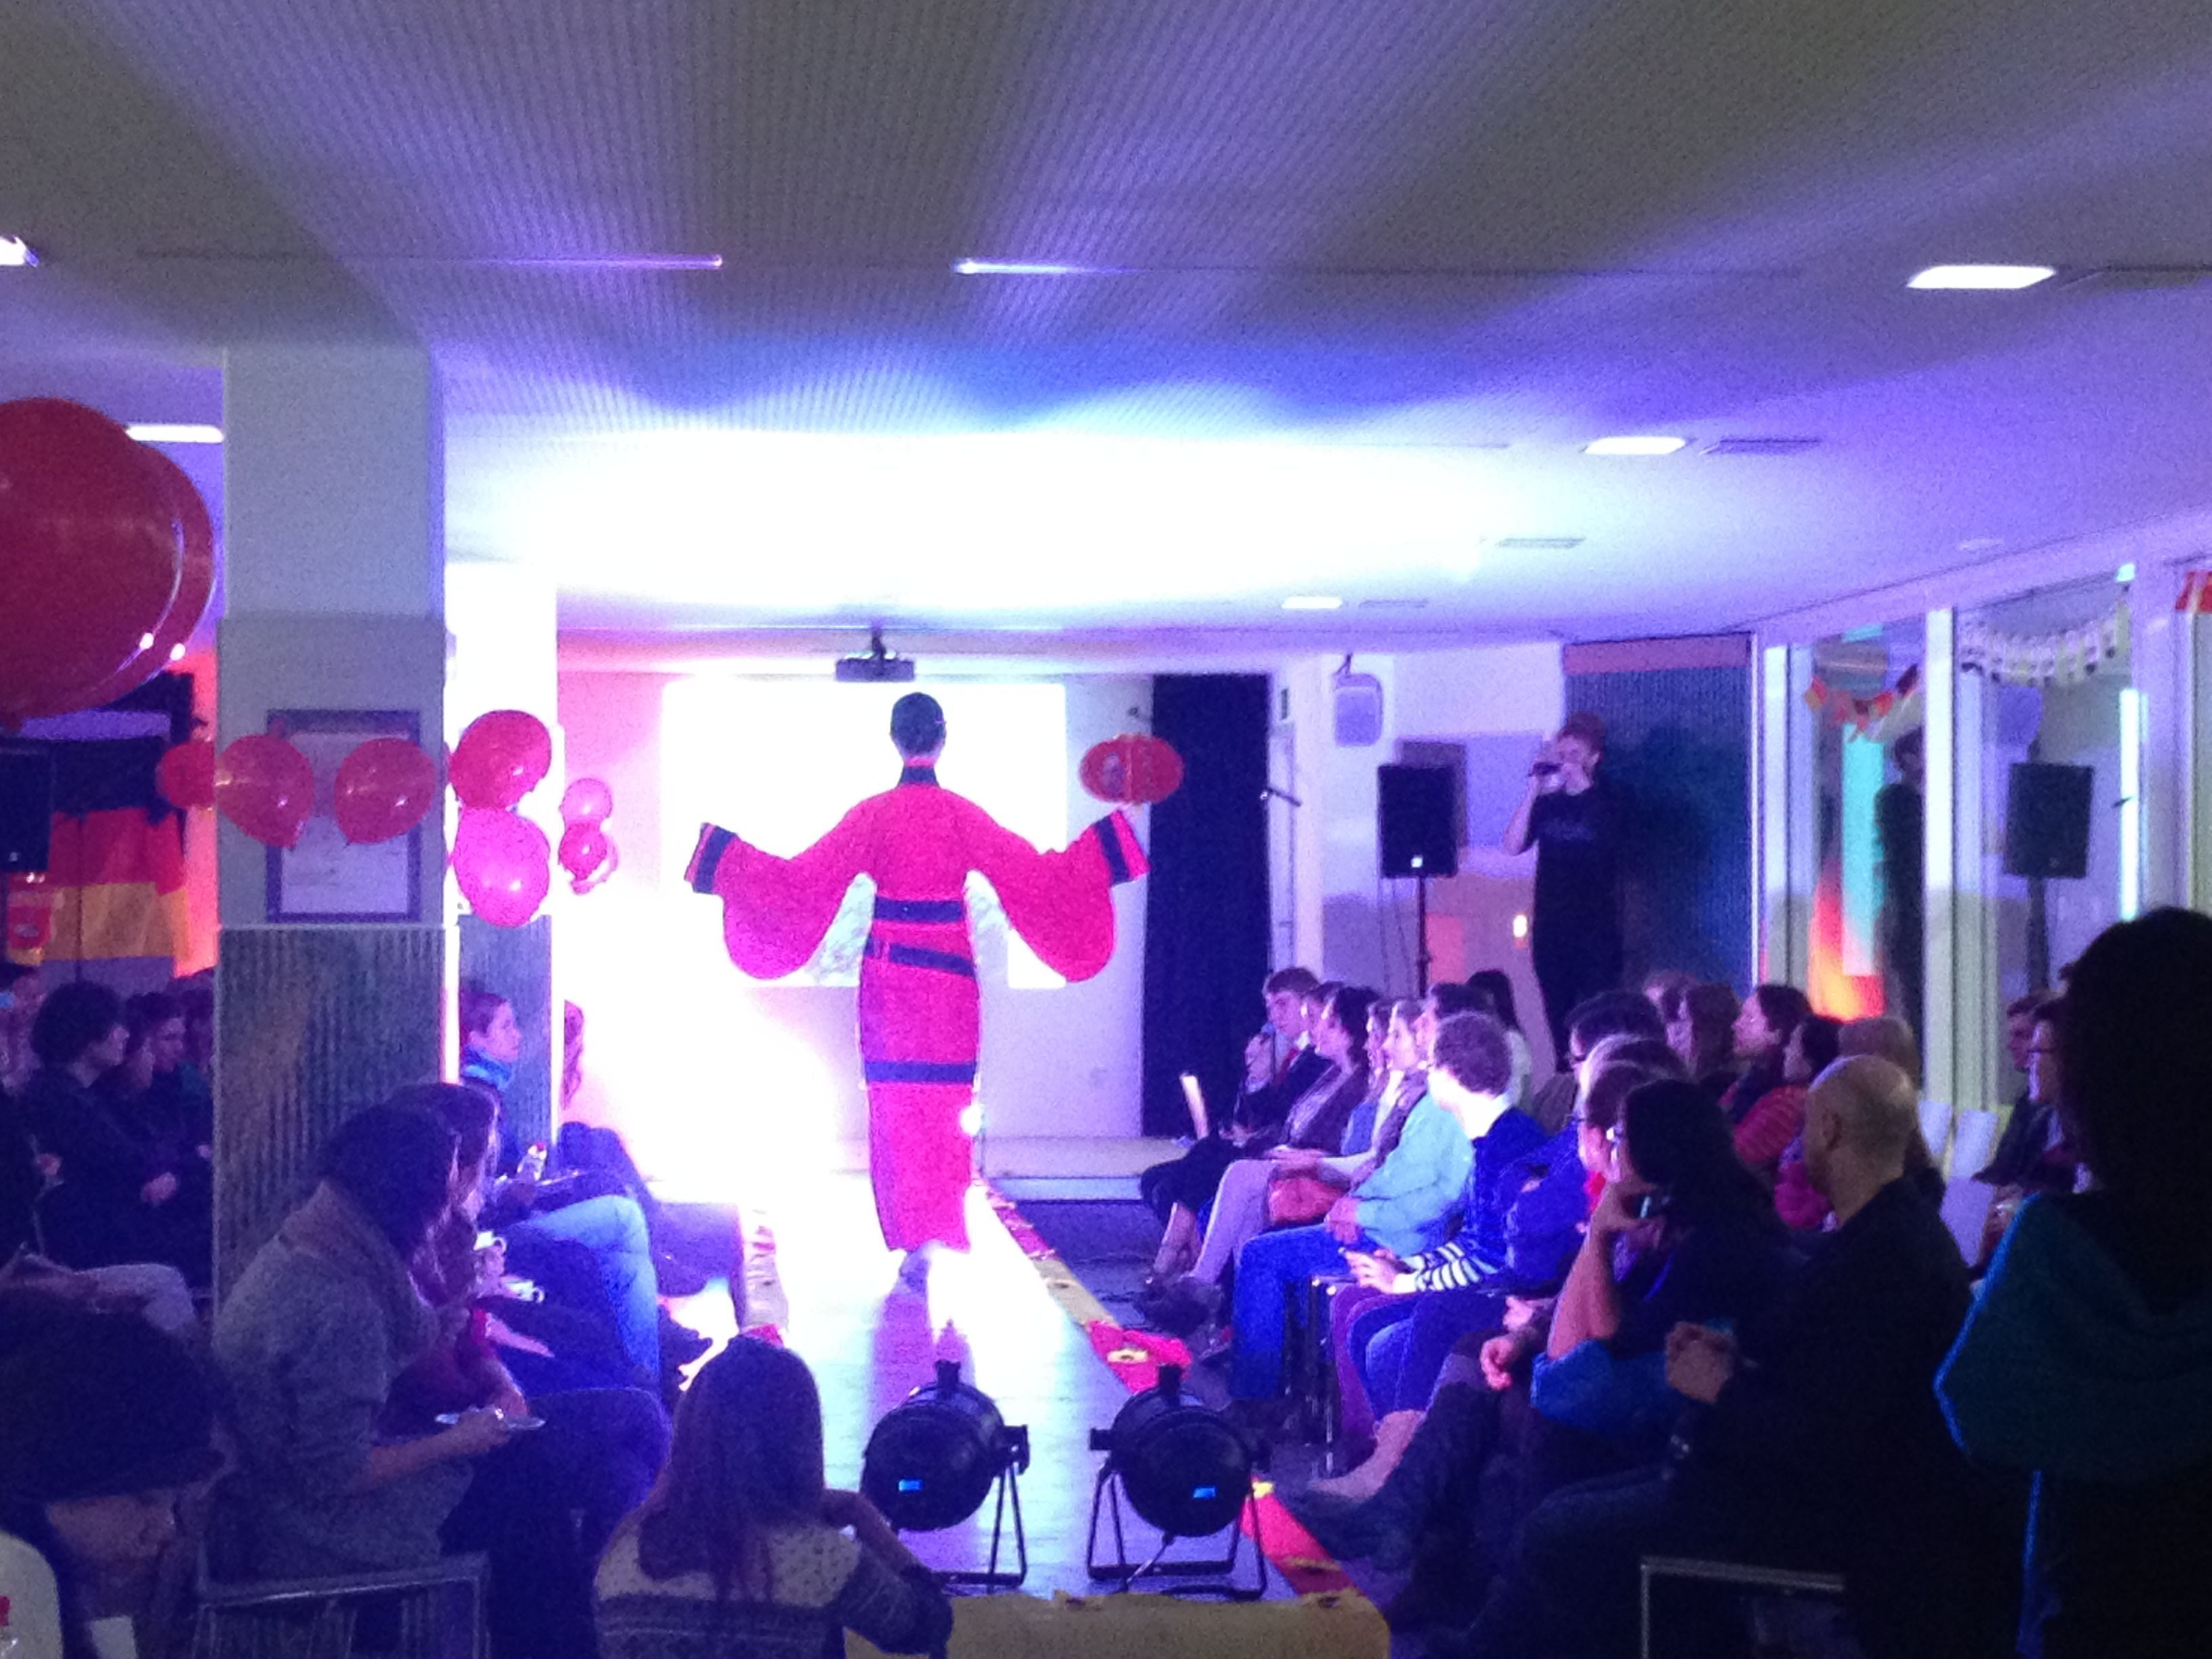 Eine chinesische Modeschau: in der Mitte befindet sich der Laufsteg, auf dem ein Model in einem roten Kimono steht. Rechts und links sitzen die Zuschauer.